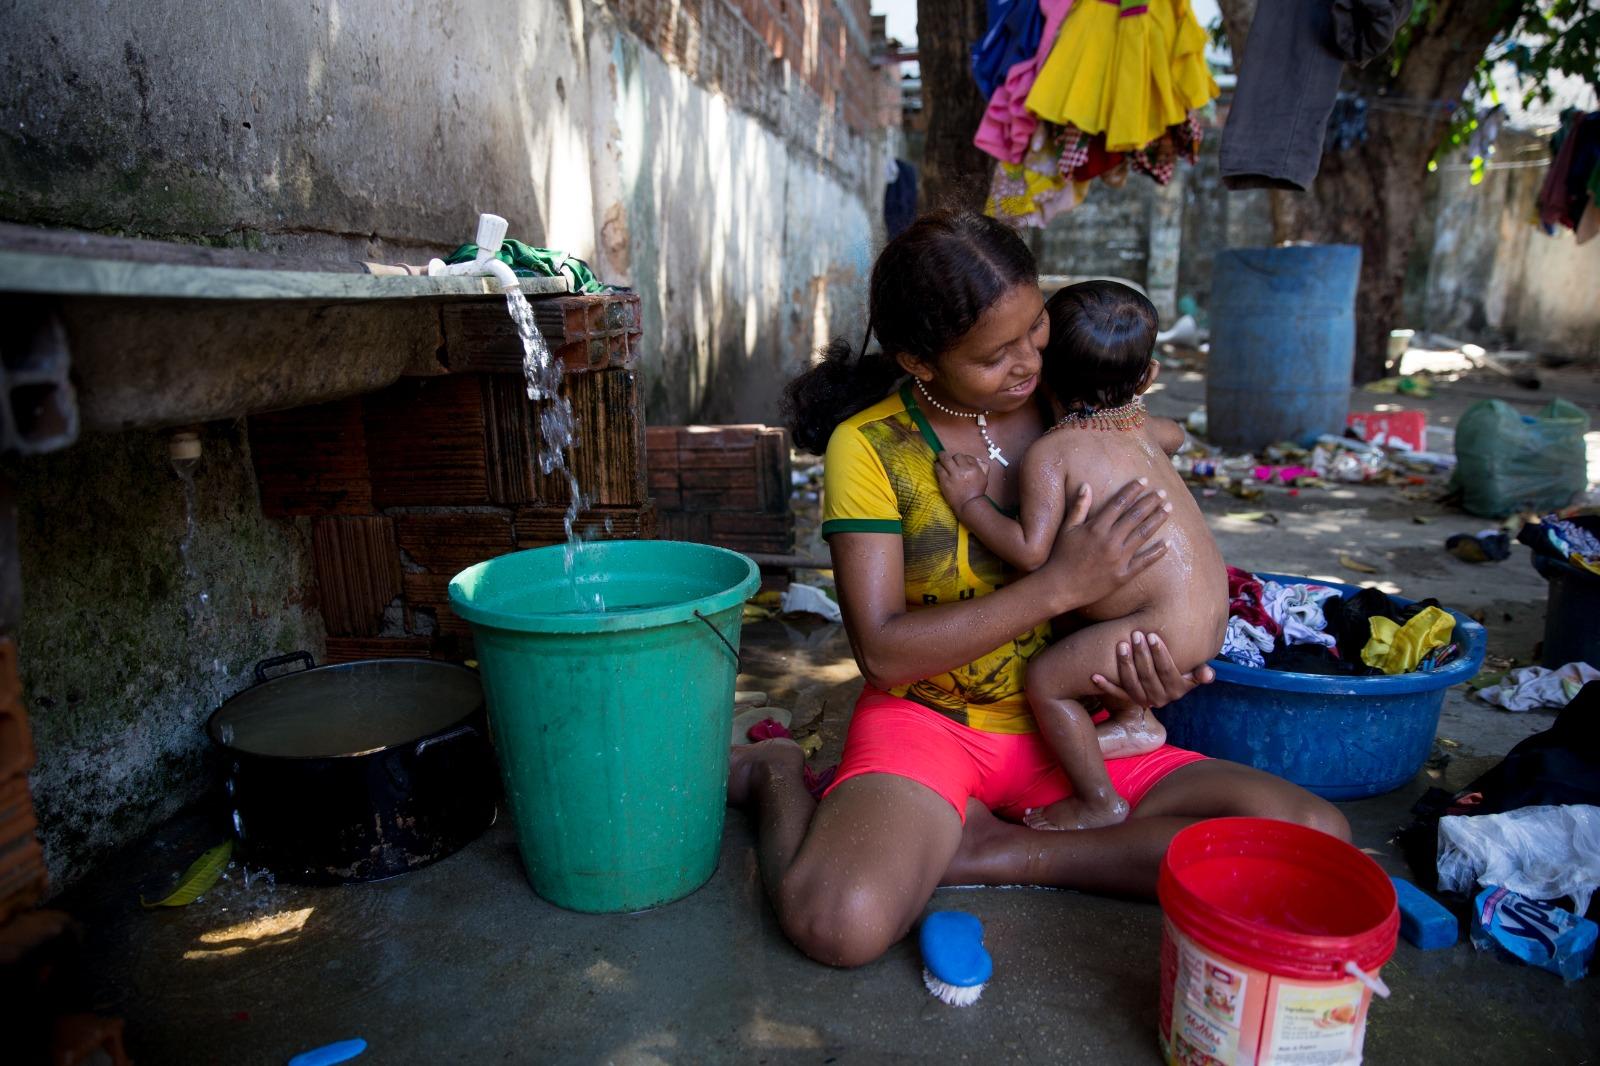 Mulher indígena venezuelana warao tomando banho com a filha perto de uma pia com água corrente e um varal com roupa colorida